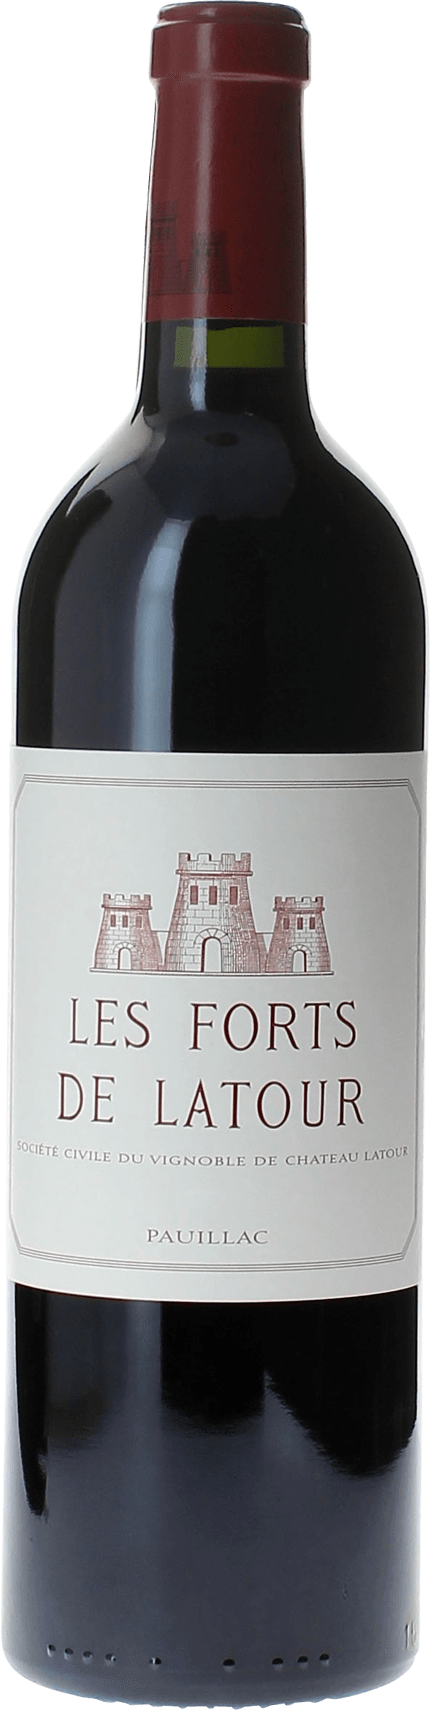 Les forts de latour 1992 2me vin de LATOUR Pauillac, Bordeaux rouge